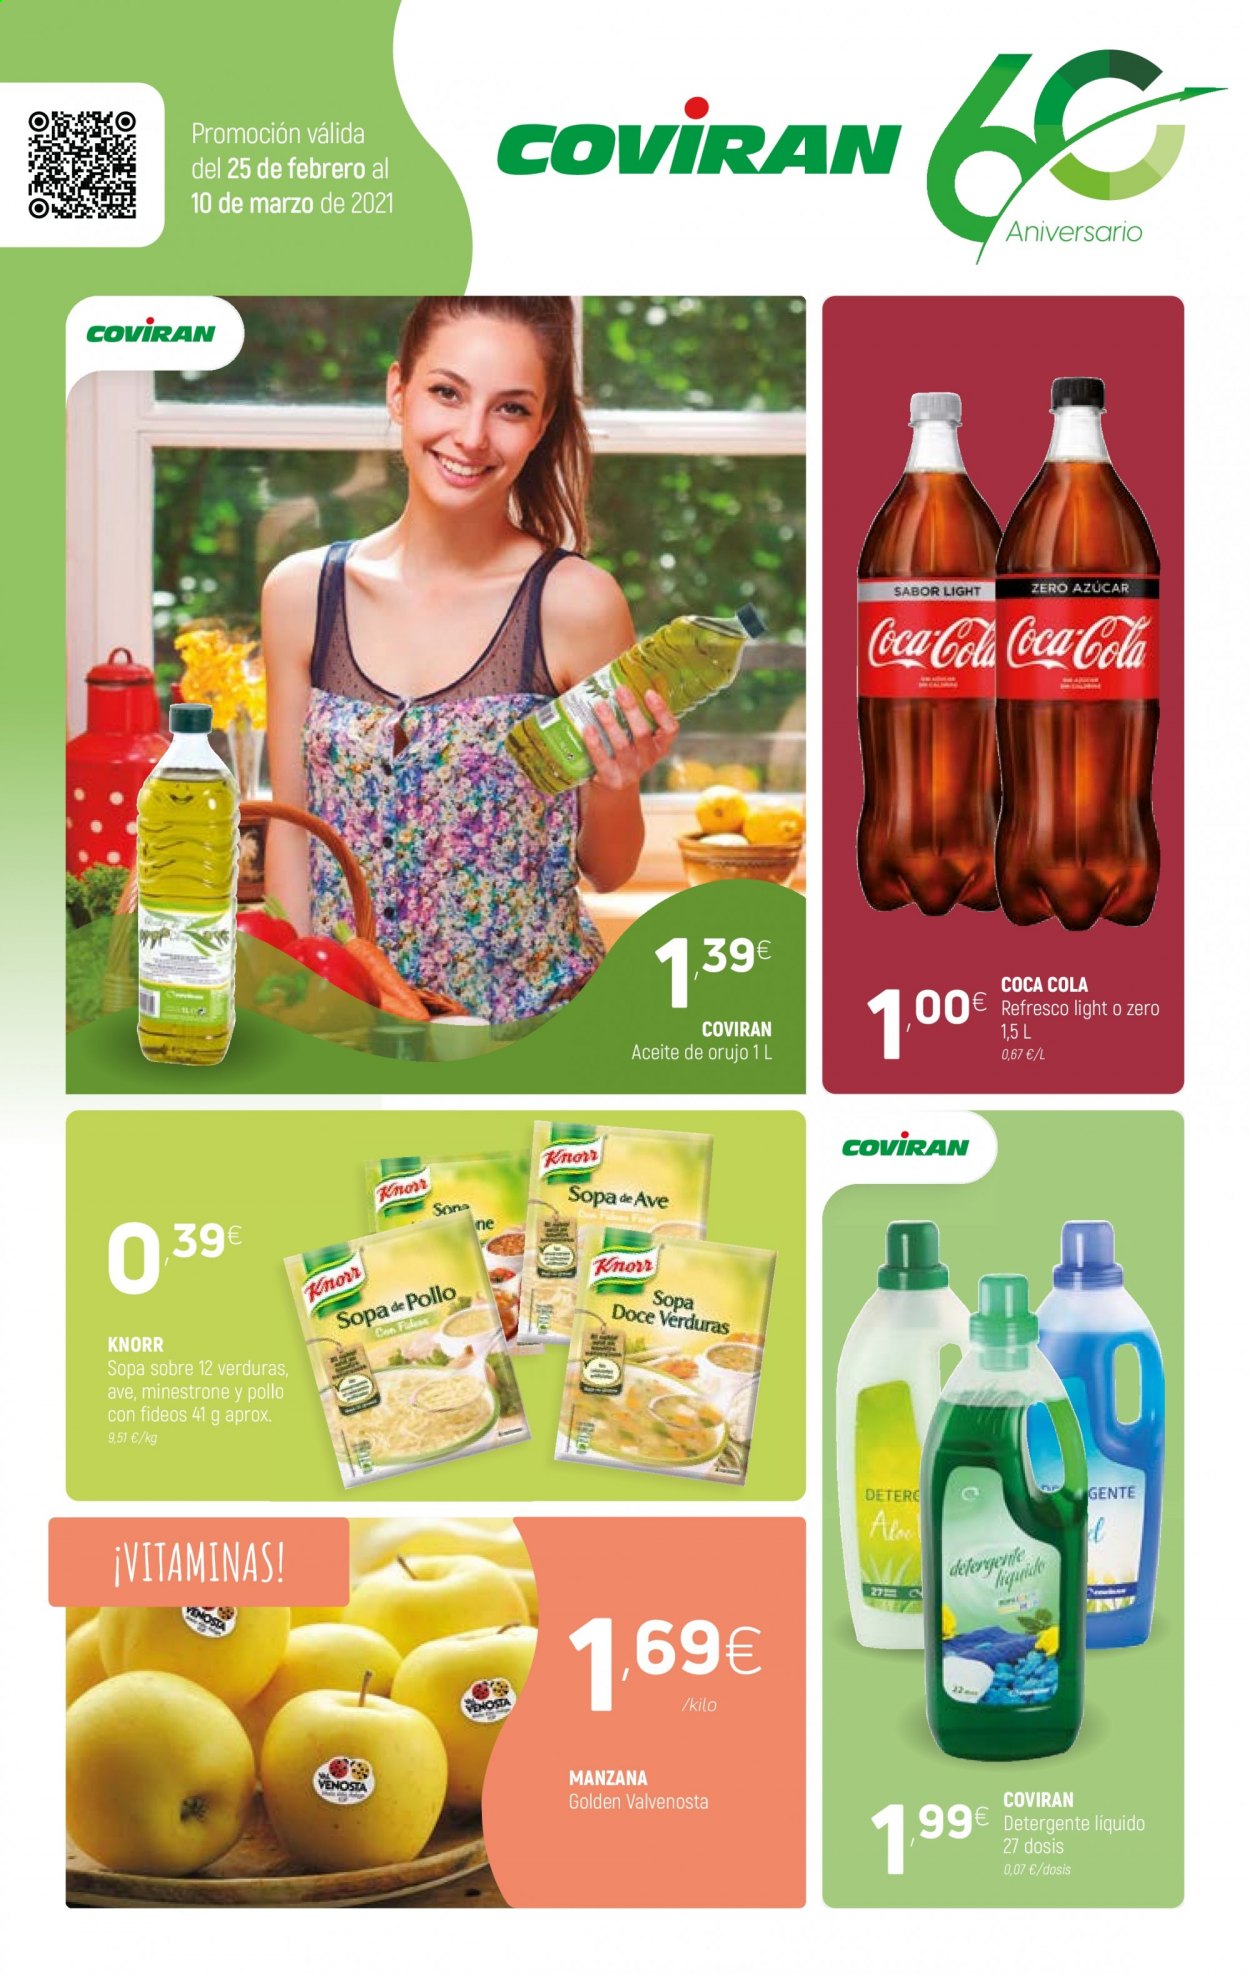 thumbnail - Folleto actual Coviran - 25/02/21 - 10/03/21 - Ventas - Knorr, sopa, refresco, Coca-cola, detergente. Página 1.